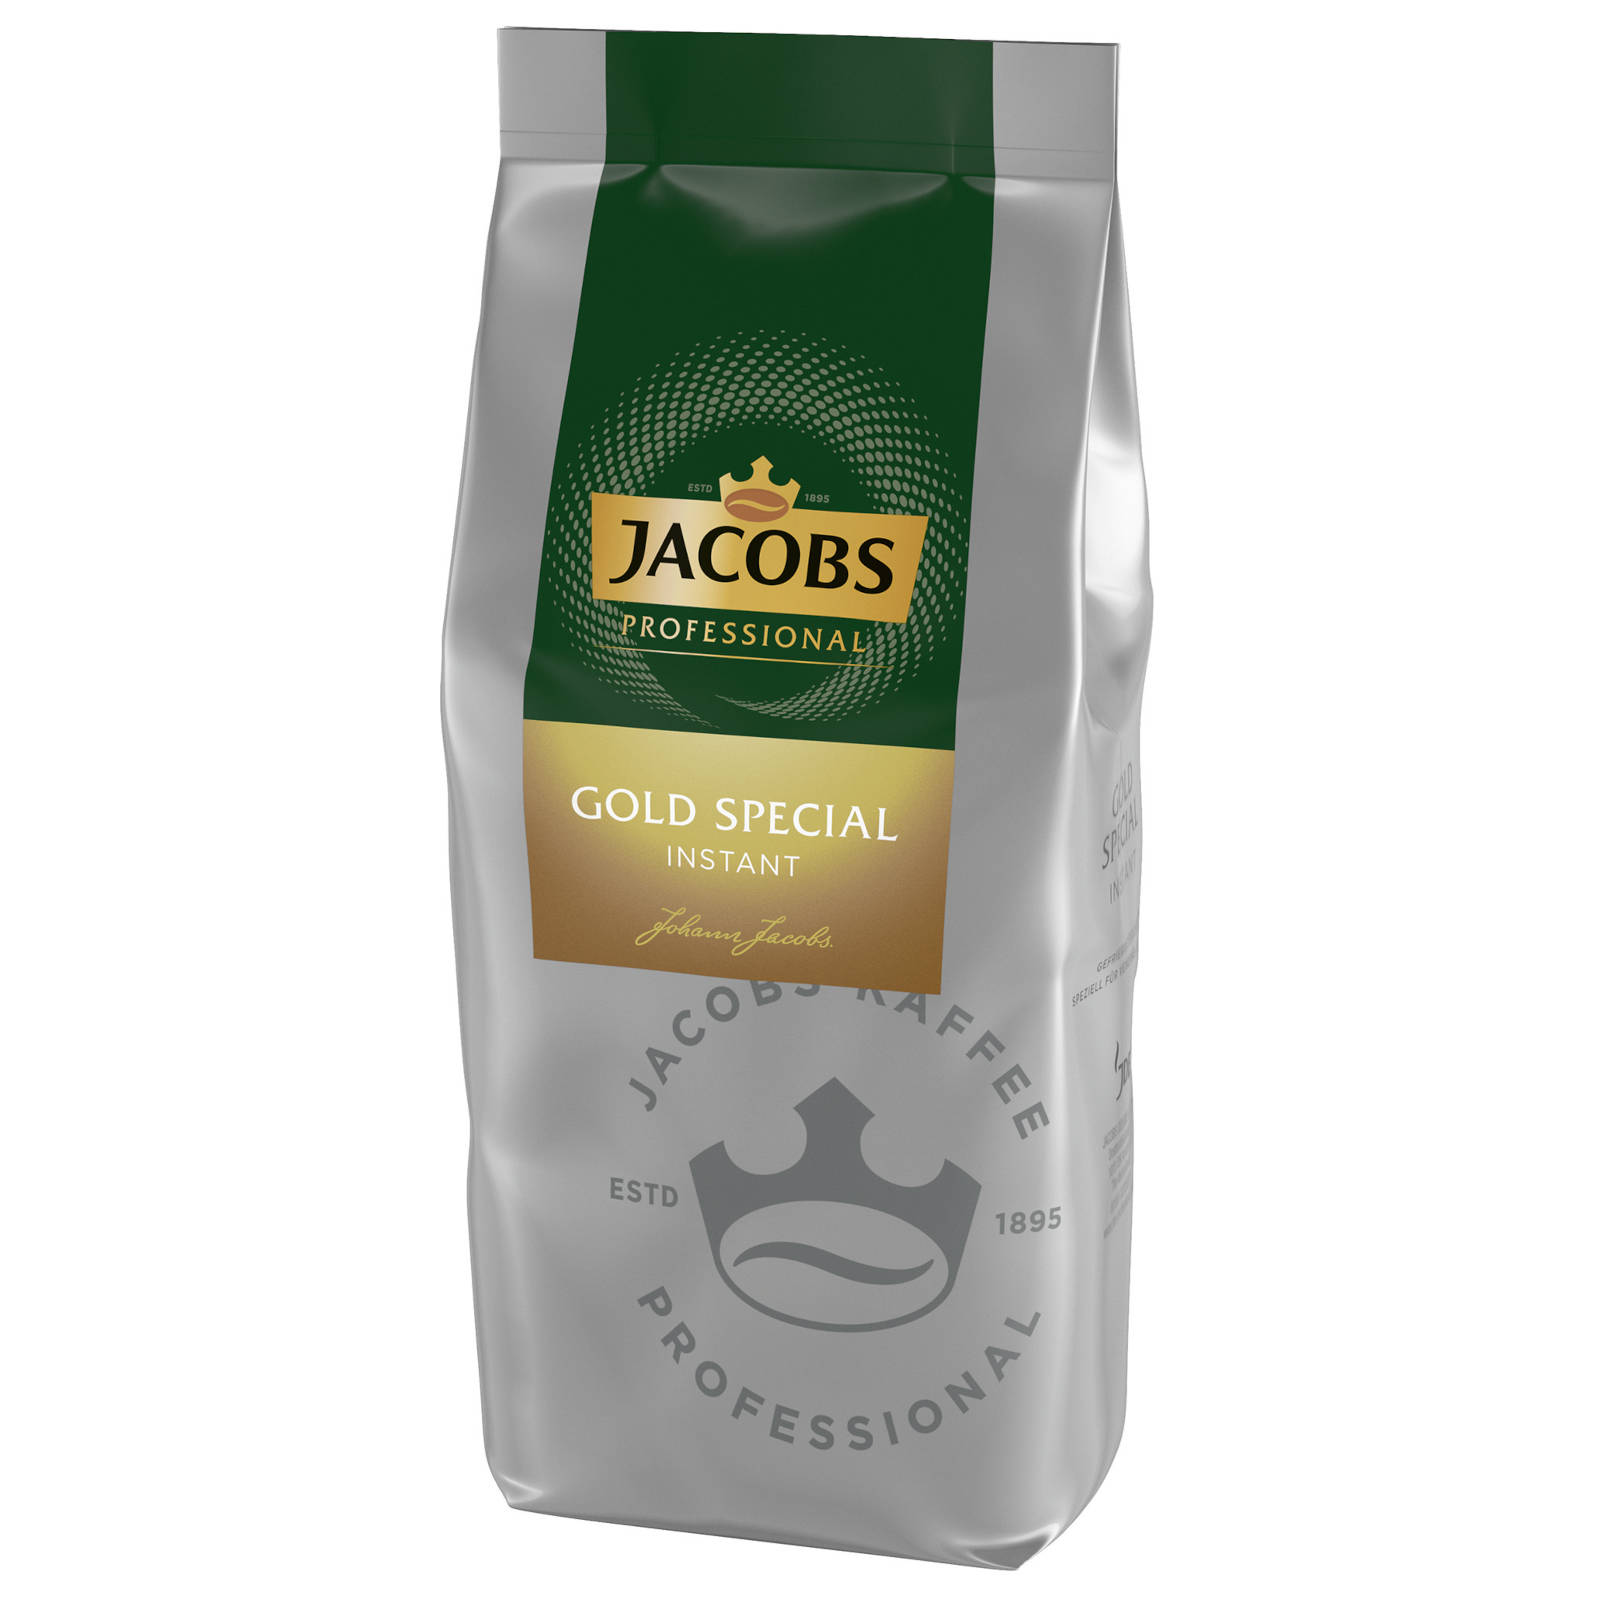 JACOBS Professiona Special 2x500 Instantkaffee auflösen, (In heißem Heißgetränkeautomaten) Gold g Wasser